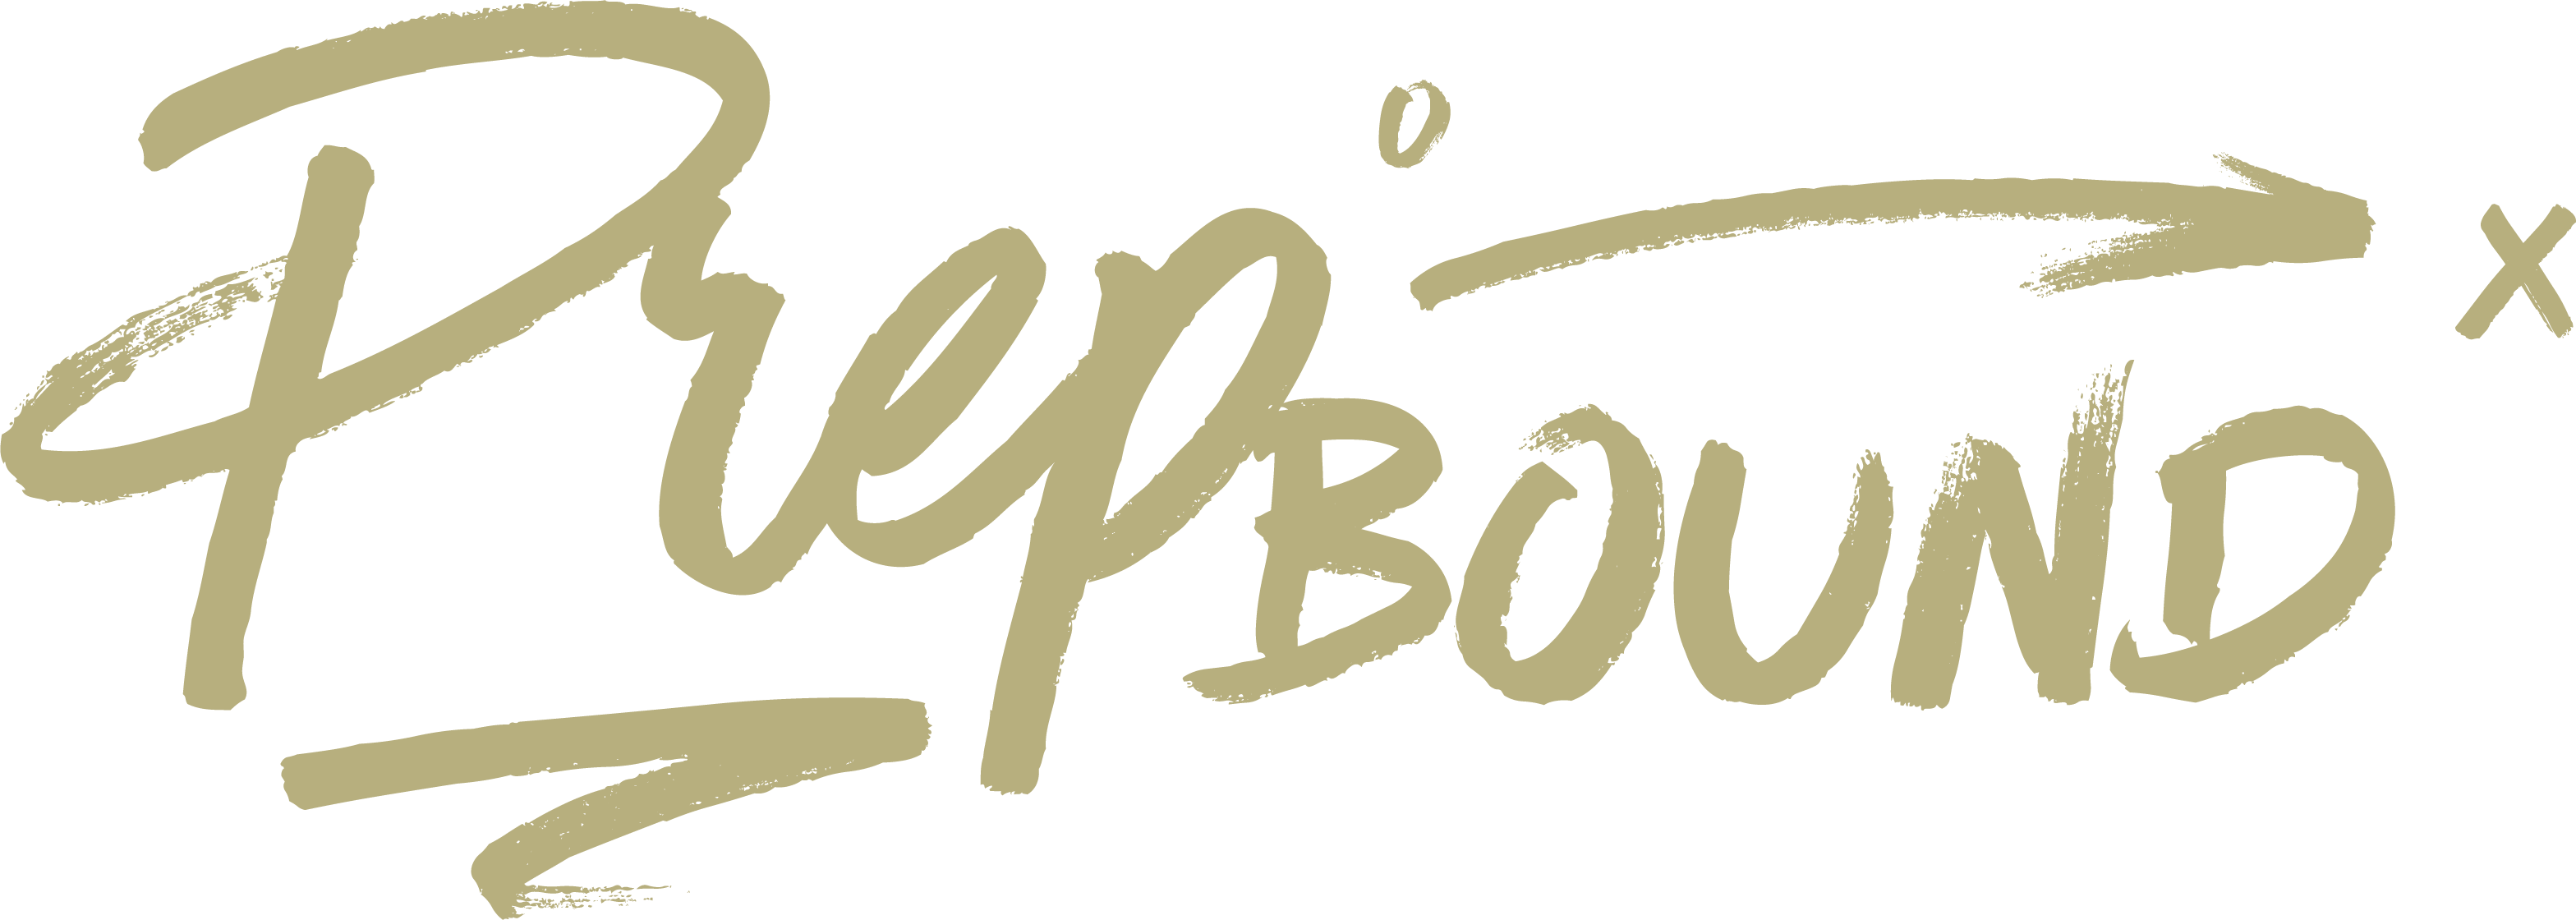 Prepbound_logo gold